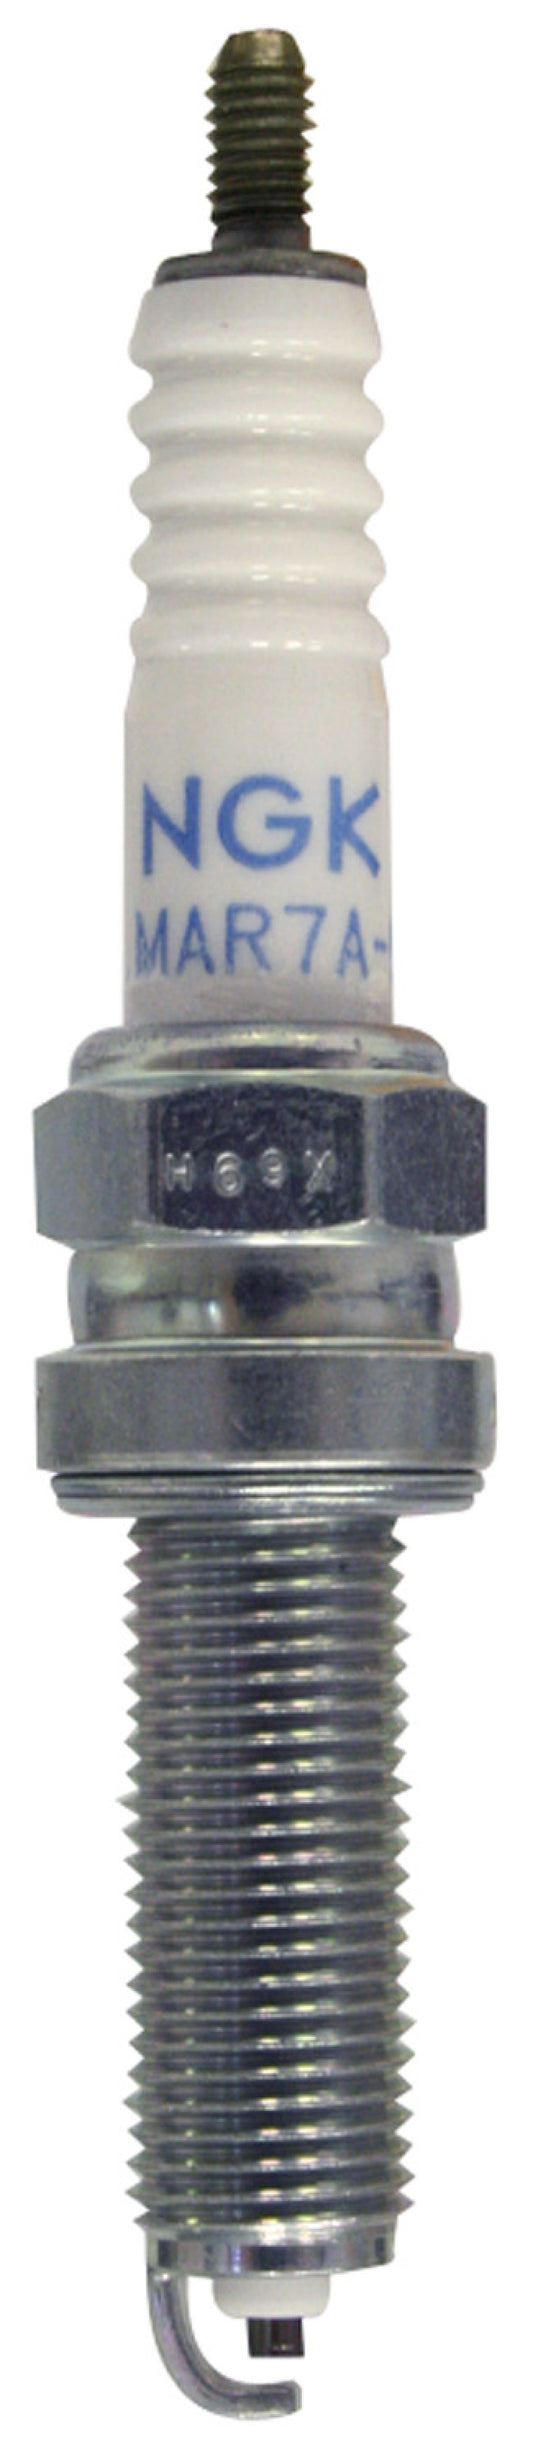 NGK Standard Spark Plug Box of 10 (LMAR8A-9)